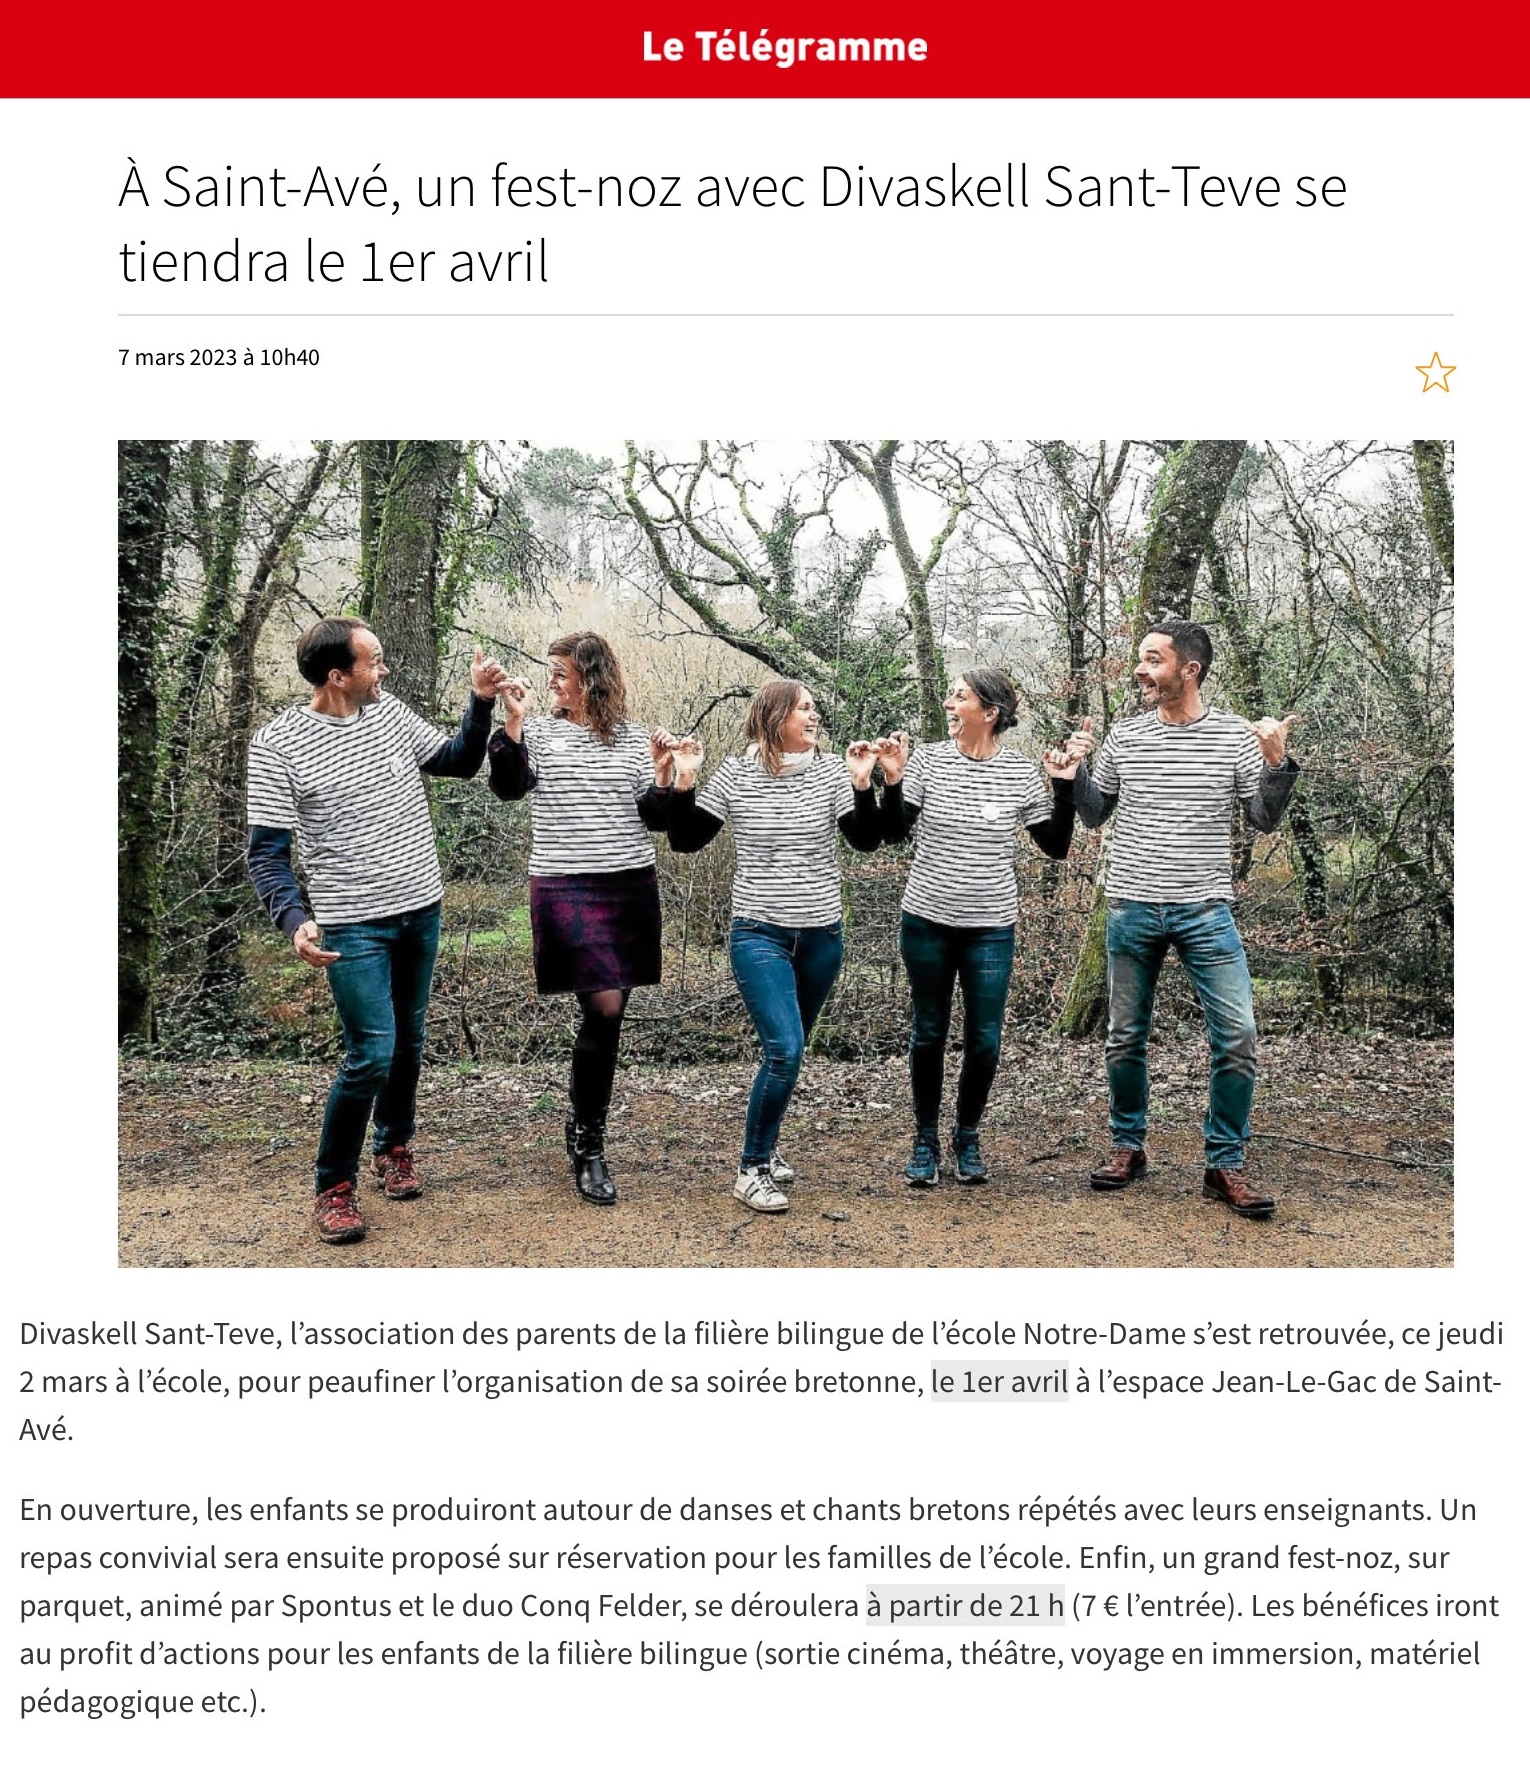 Un fest-noz avec Divaskell Sant-Teve se tiendra le 1er avril